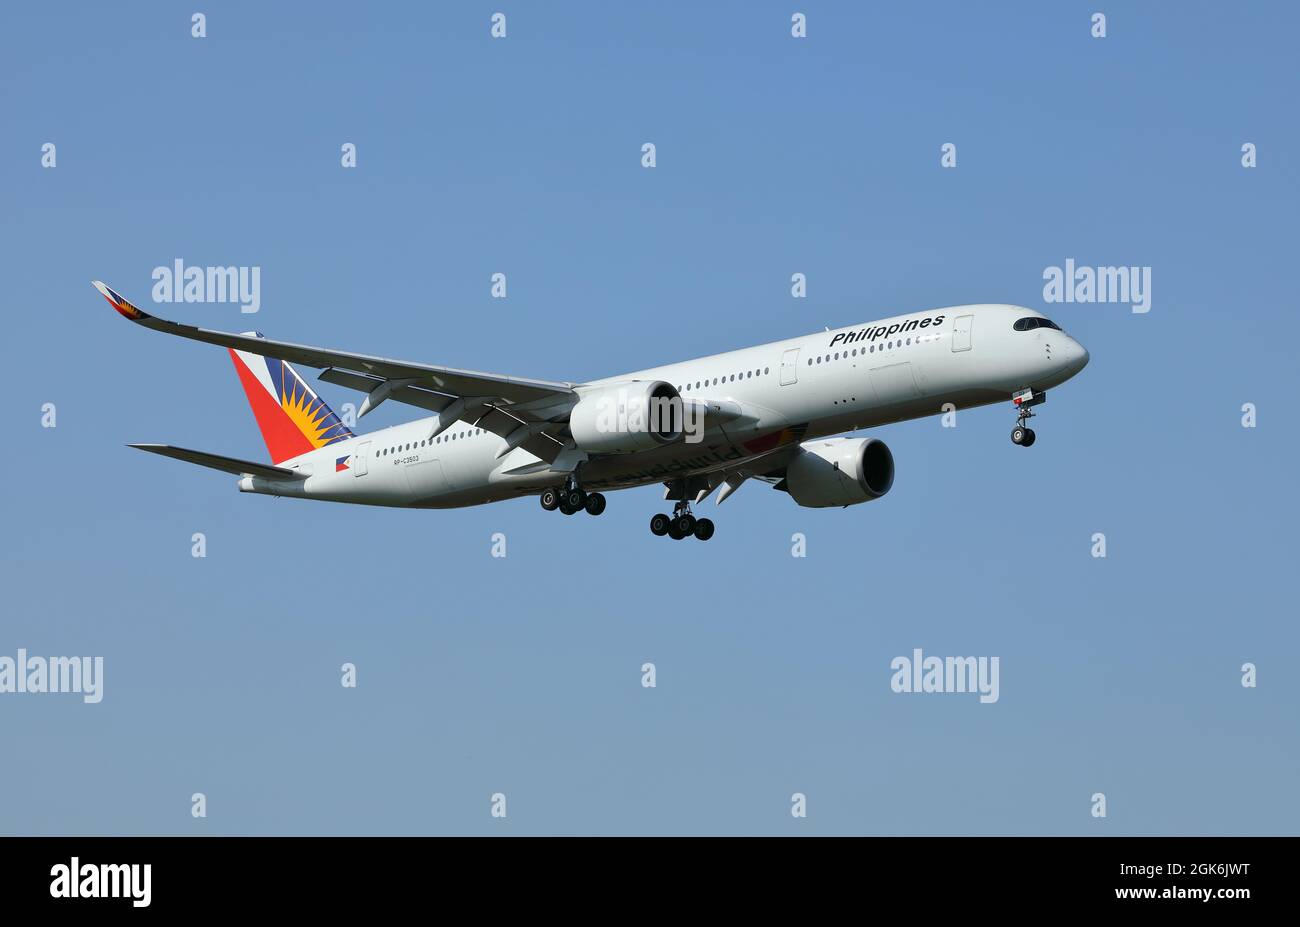 Ein Airbus A350 von Philippine Airlines, Seriennummer RP-C3503, wird am Flughafen Heathrow, London, Großbritannien, landen. Stockfoto